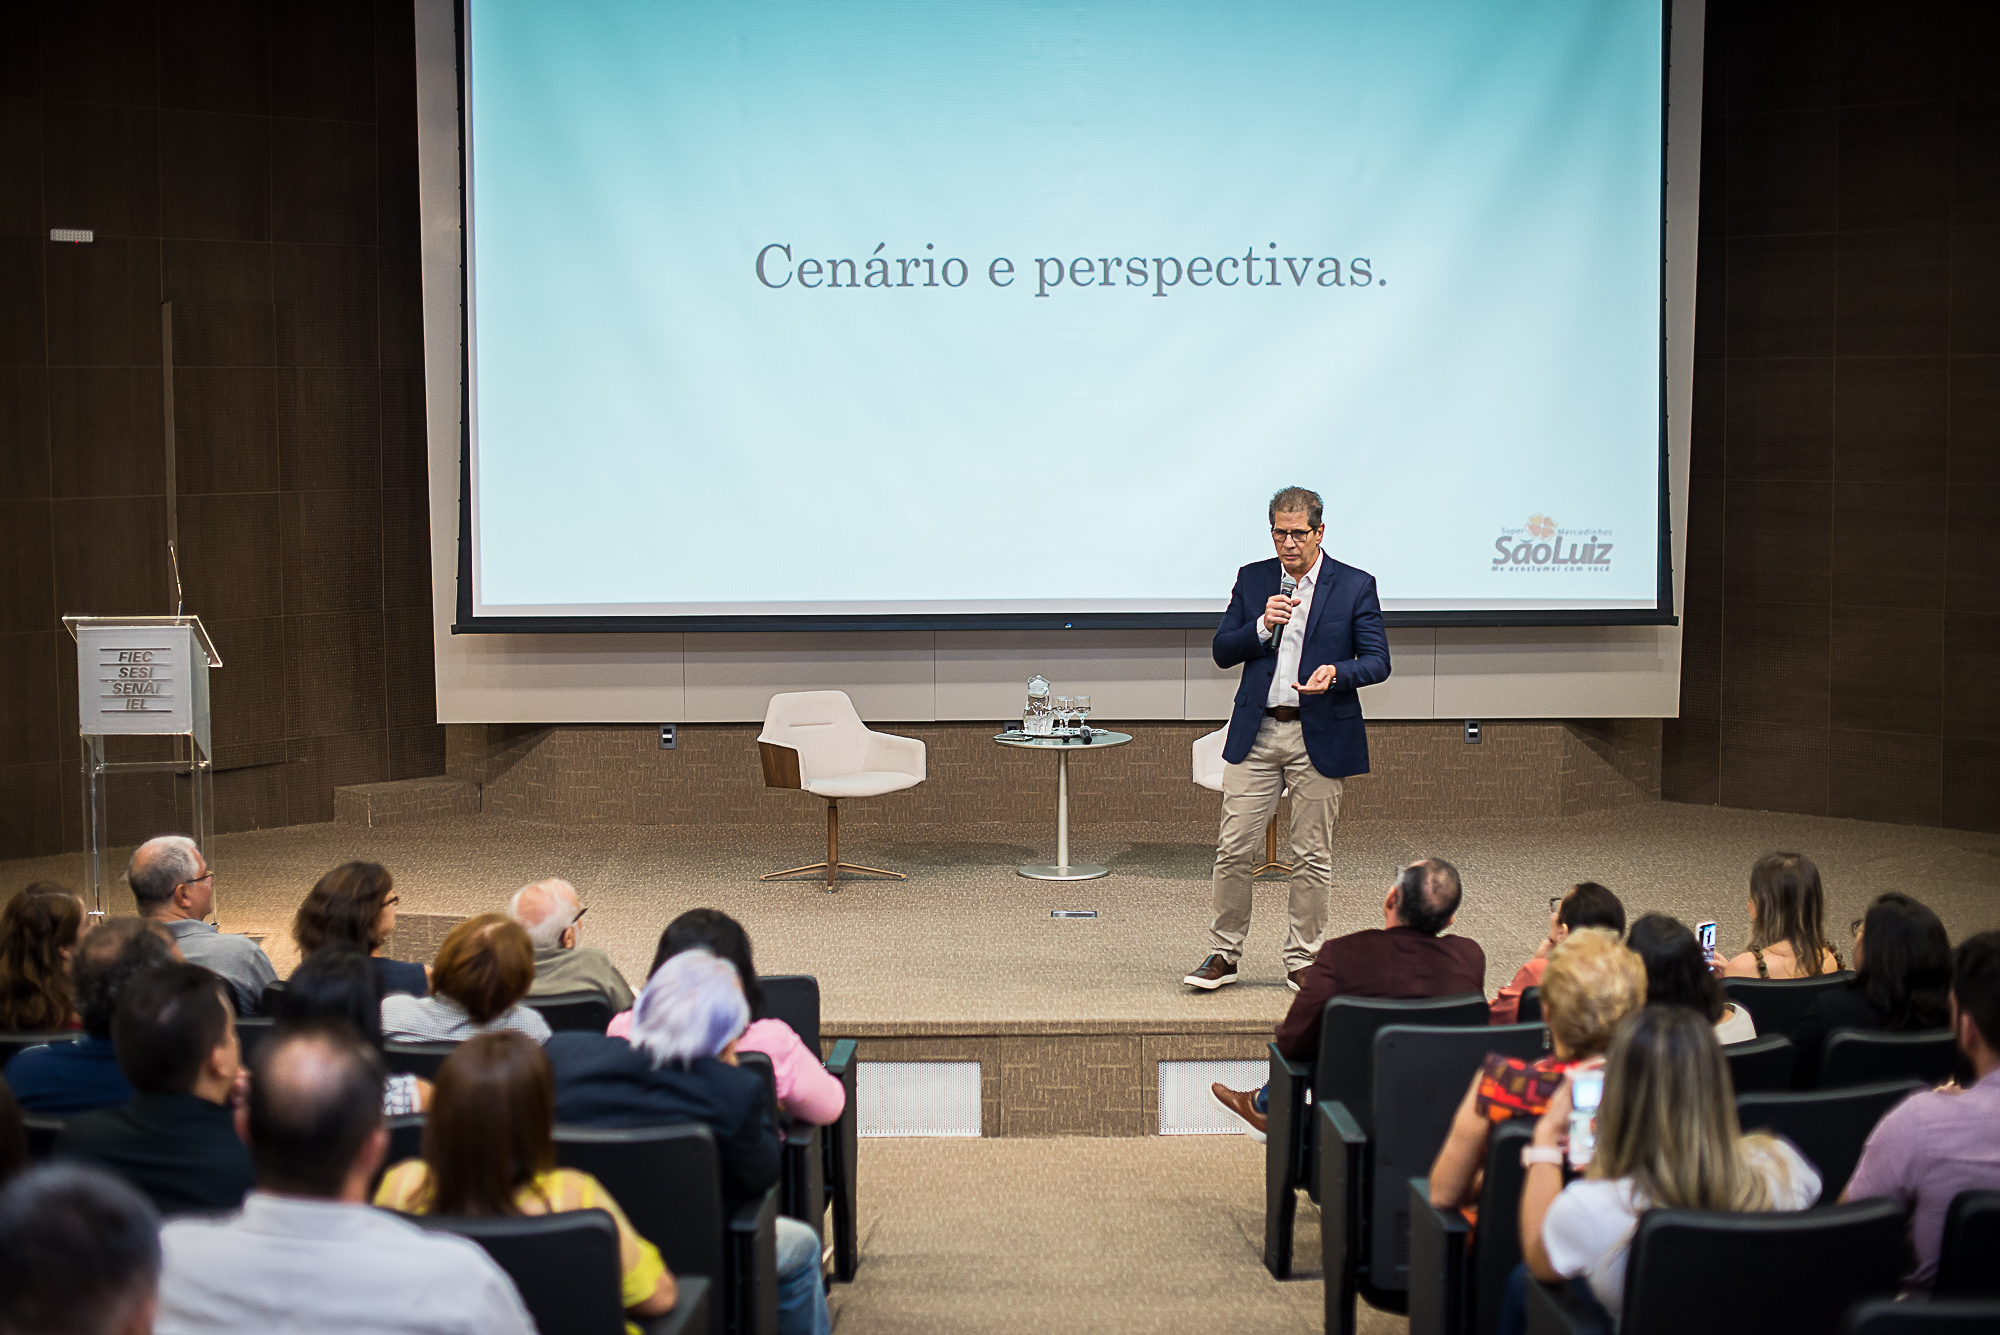 Severino Ramalho Neto palestra sobre cenários e perspectivas em evento na Fiec